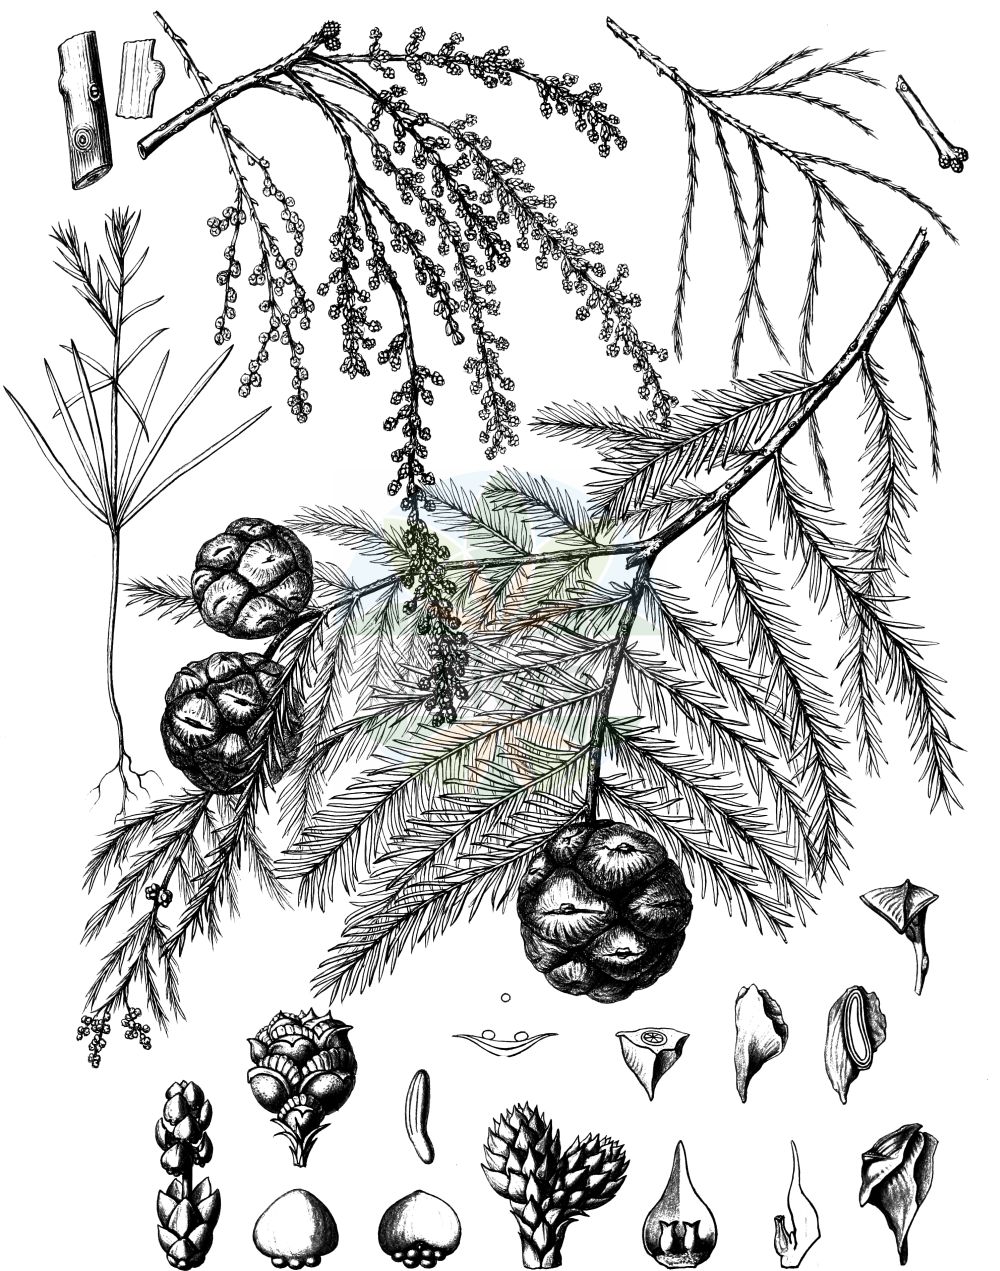 Historische Abbildung von Taxodium distichum (Echte Sumpfzypresse - Swamp Cypress). Das Bild zeigt Blatt, Bluete, Frucht und Same. ---- Historical Drawing of Taxodium distichum (Echte Sumpfzypresse - Swamp Cypress). The image is showing leaf, flower, fruit and seed.(Taxodium distichum,Echte Sumpfzypresse,Swamp Cypress,Cupressus disticha,Taxodium distichum,Echte Sumpfzypresse,Swamp Cypress,American Bald Cypress,Pond Cypress,Bald Cypress,Gulf Cypress,Red Cypress,Southern Cypress,Yellow Cypress,Taxodium,Sumpfzypresse,Bald Cypress,Cupressaceae,Zypressengewächse,Cypress family,Blatt,Bluete,Frucht,Same,leaf,flower,fruit,seed,Sargent (1891-1902))